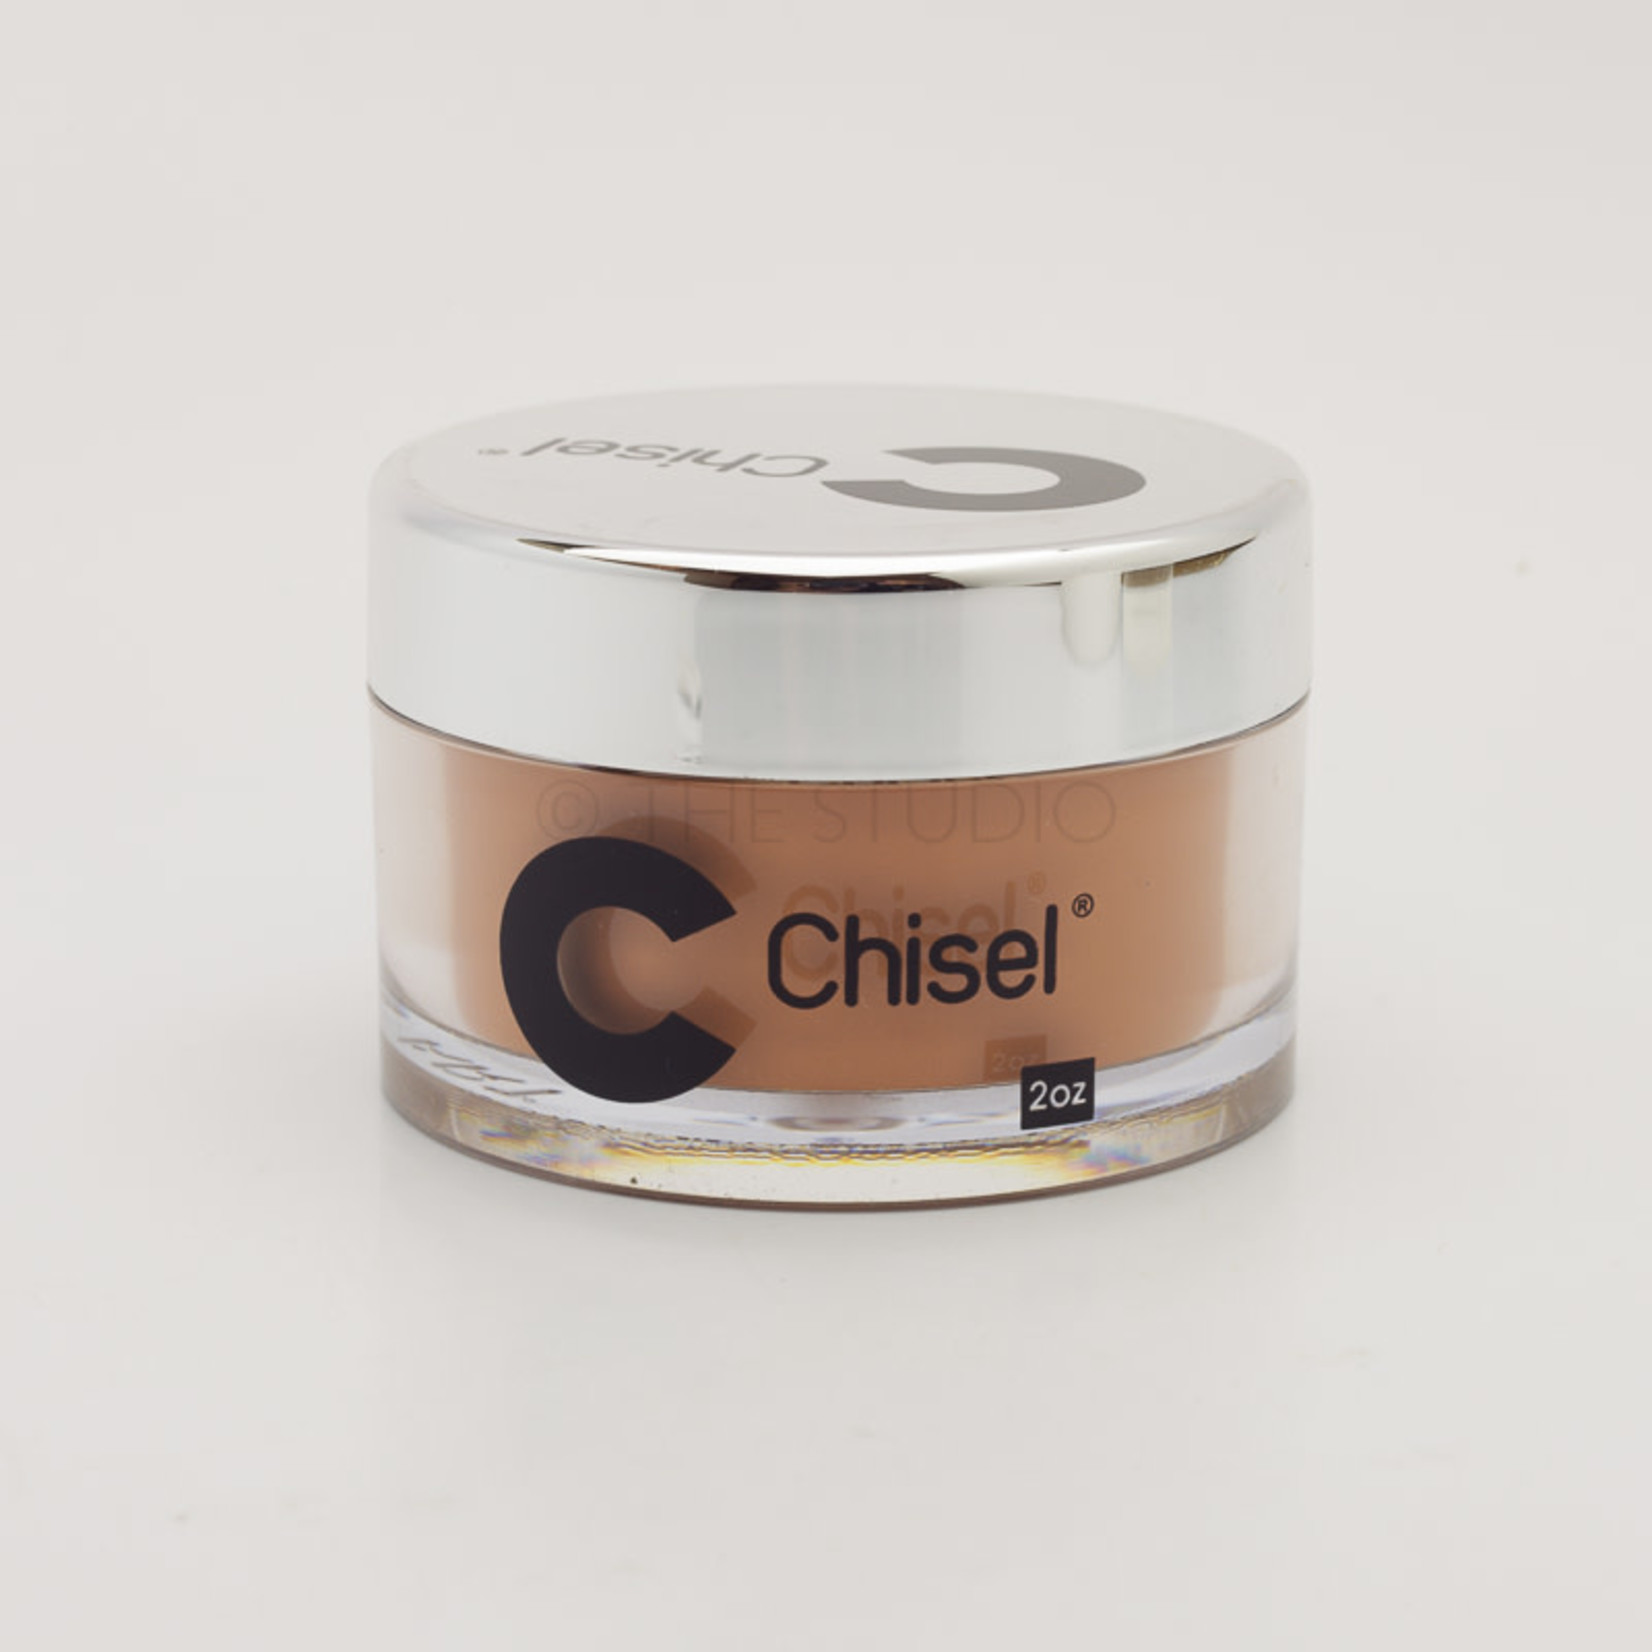 Chisel Chisel - Solid 038 - AIO Powder - 2 oz